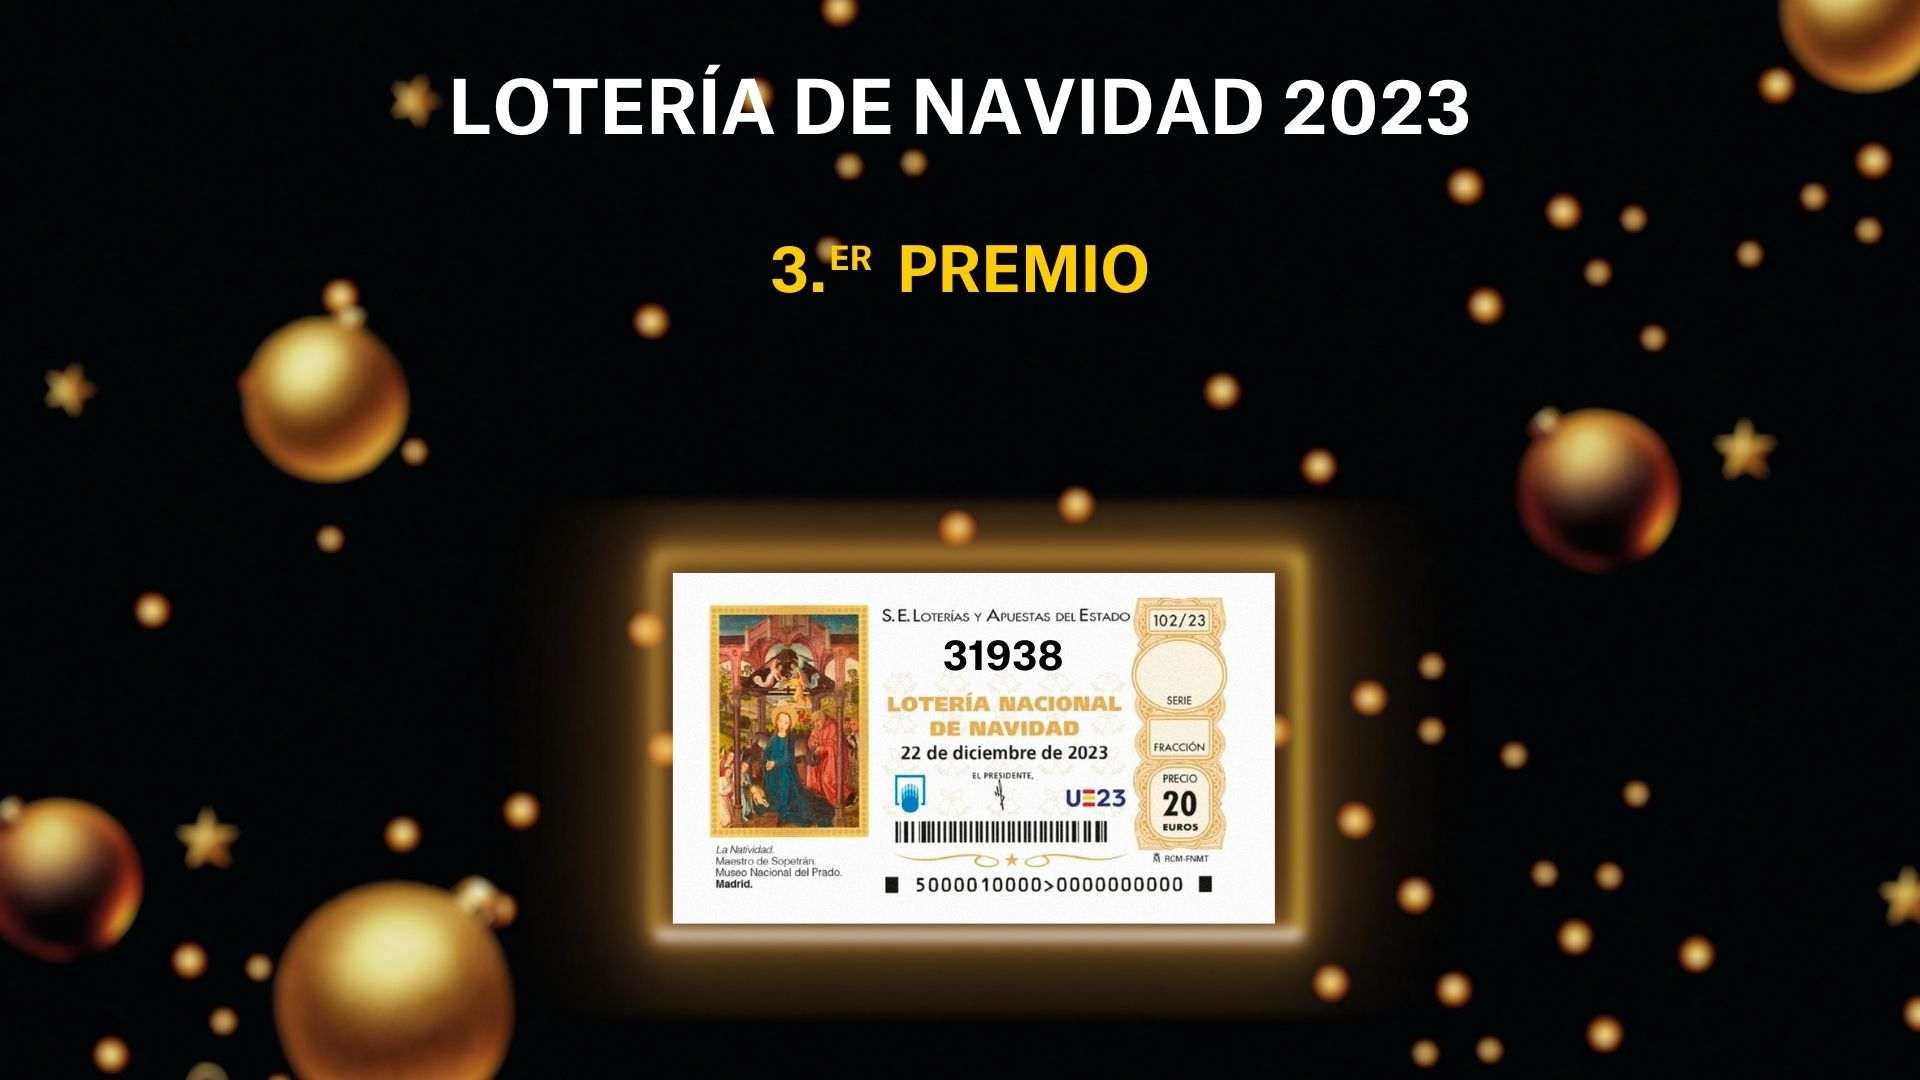 Tercer premio de la Lotería de Navidad 2023: 31938